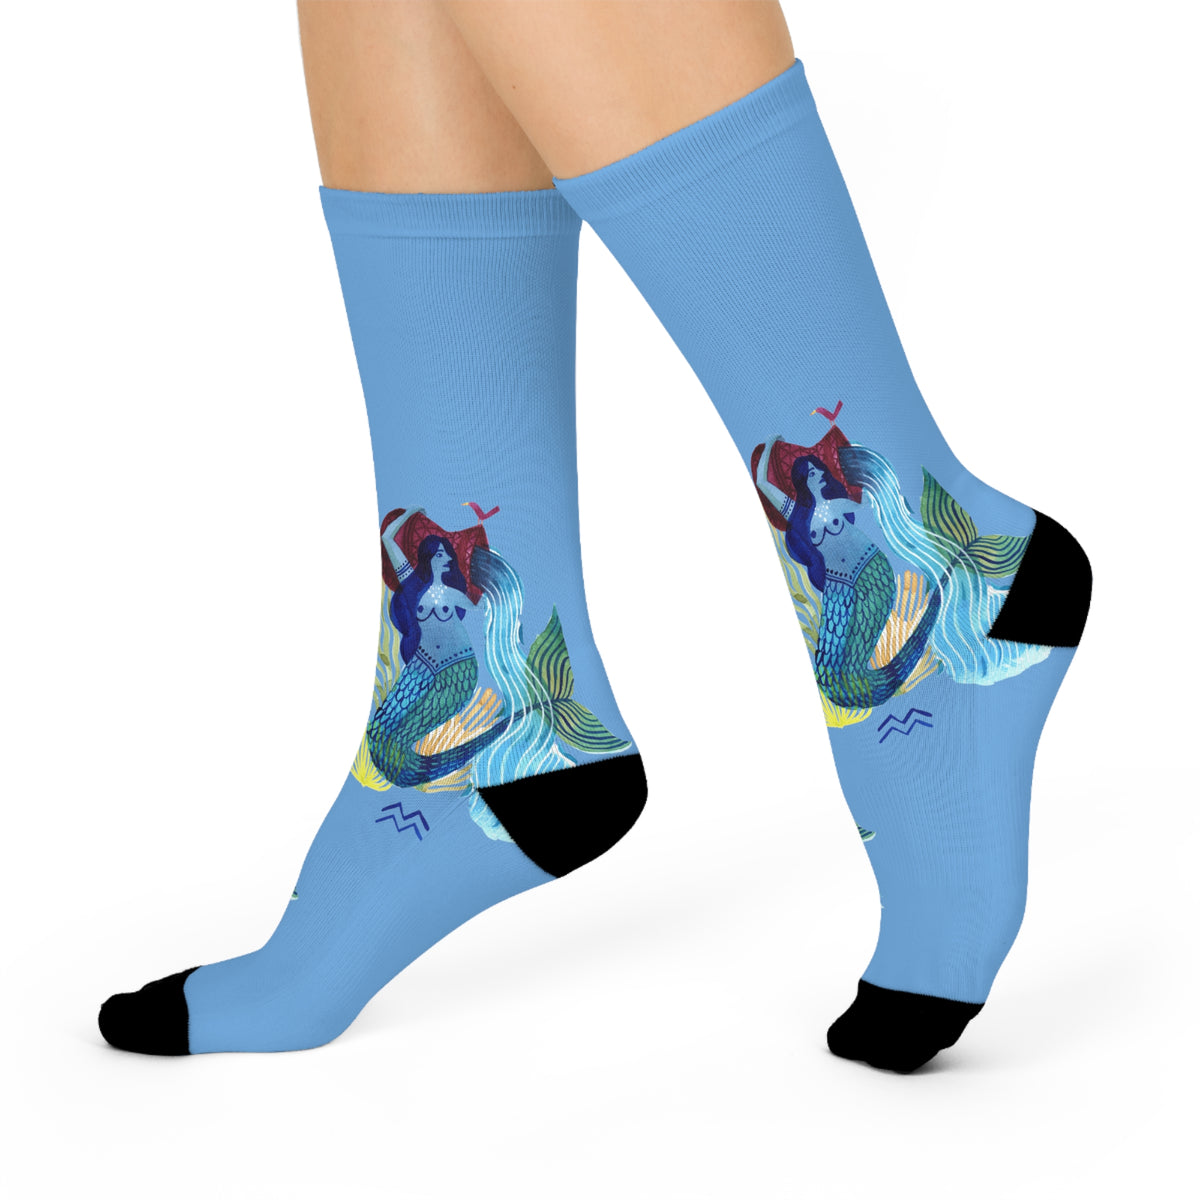 Aquarius "Waterbearer Socks"